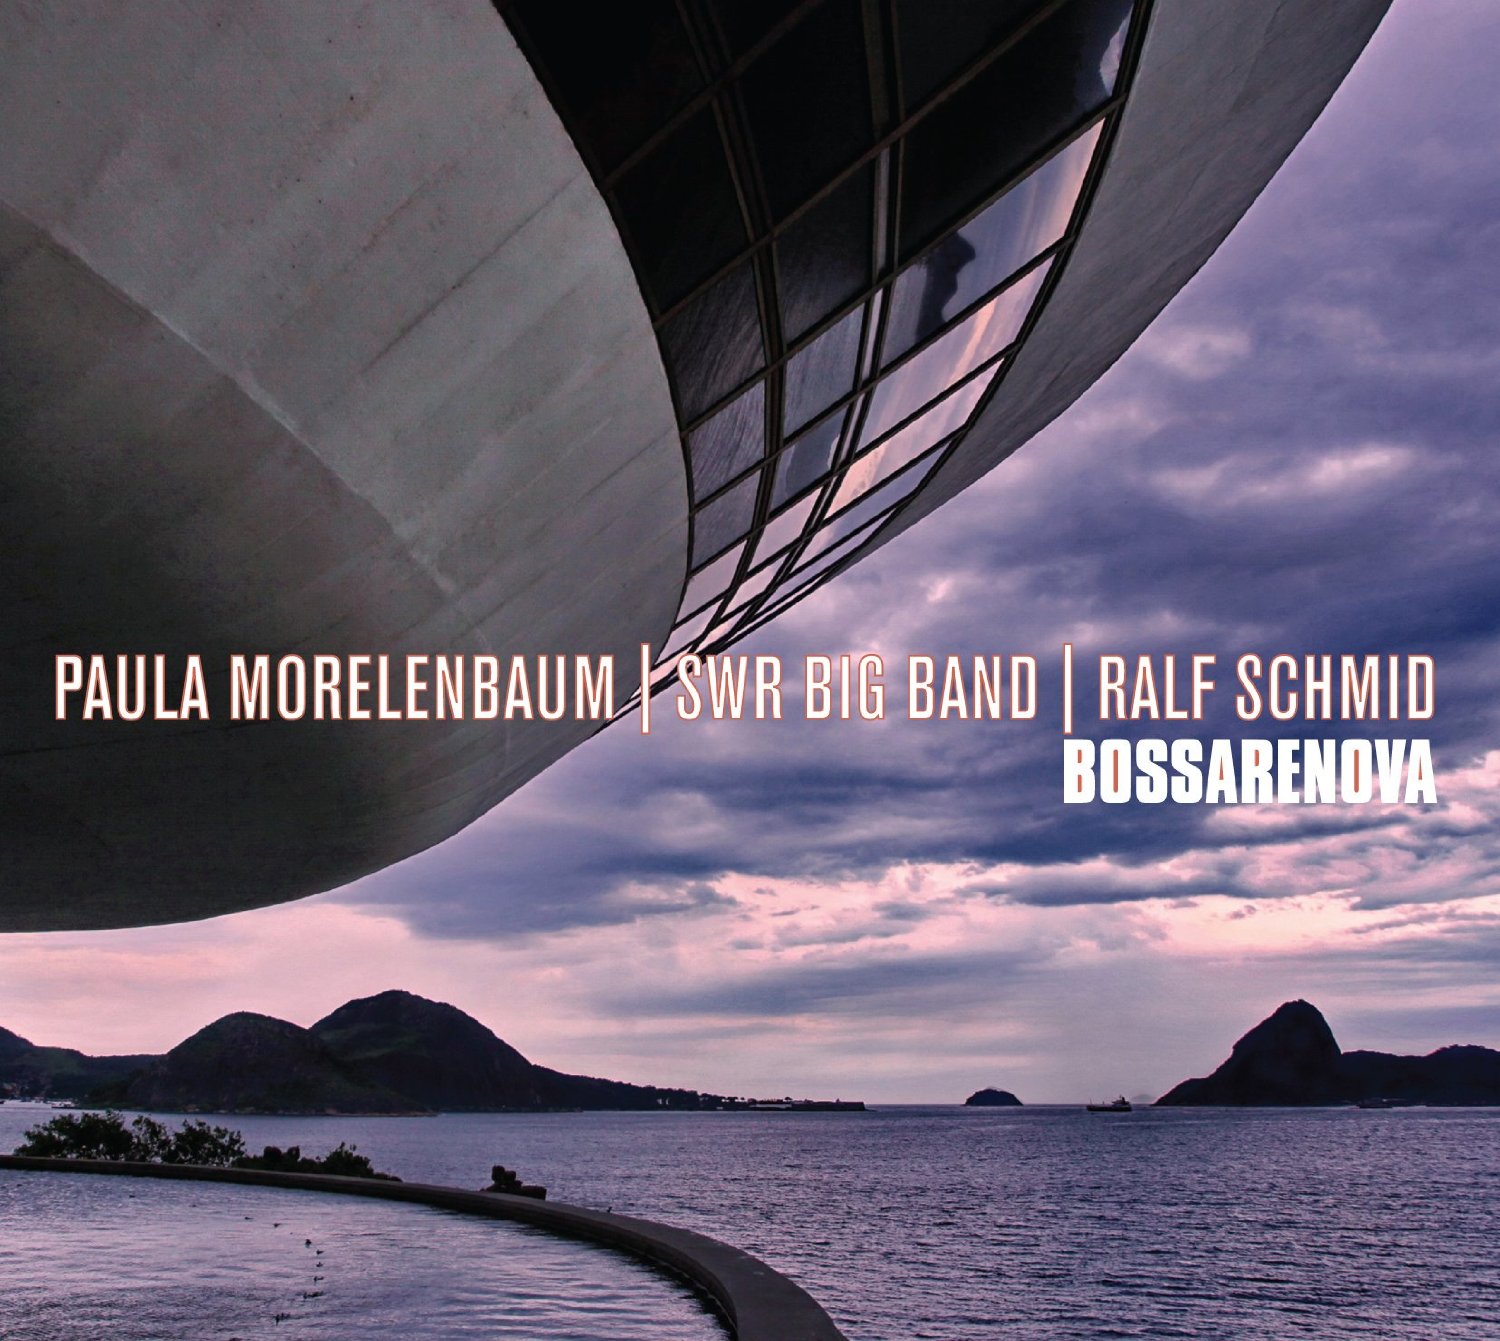 PAULA MORELENBAUM - Bossarenova cover 